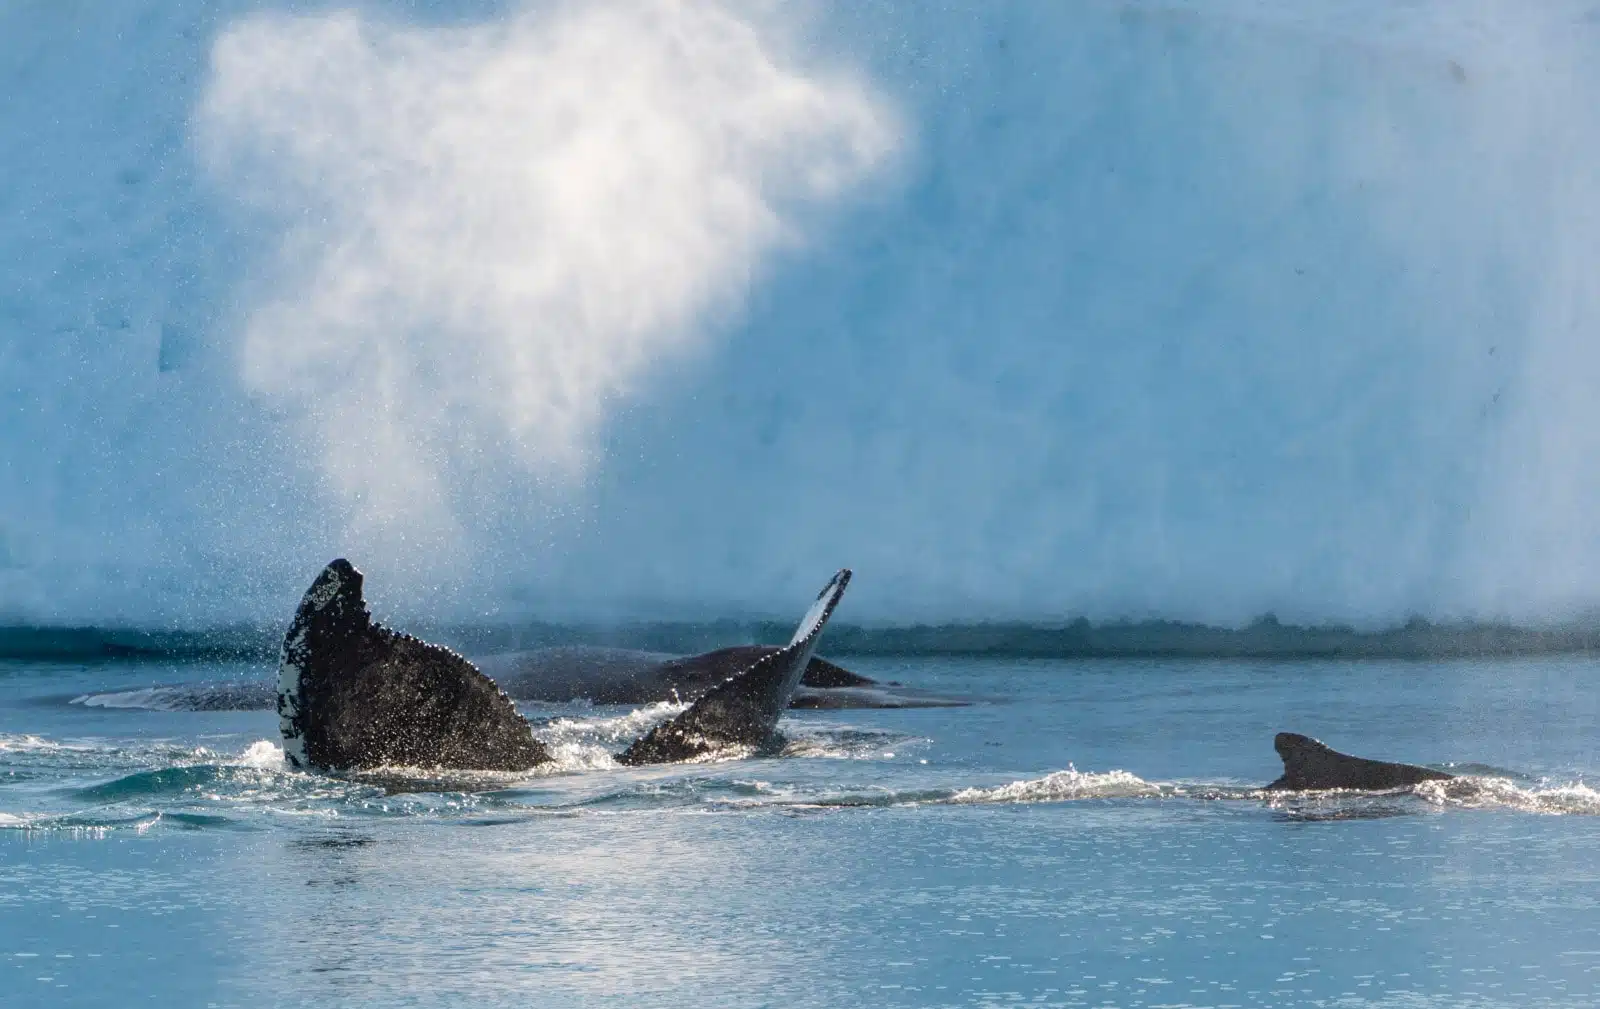 La science participative autour des baleines